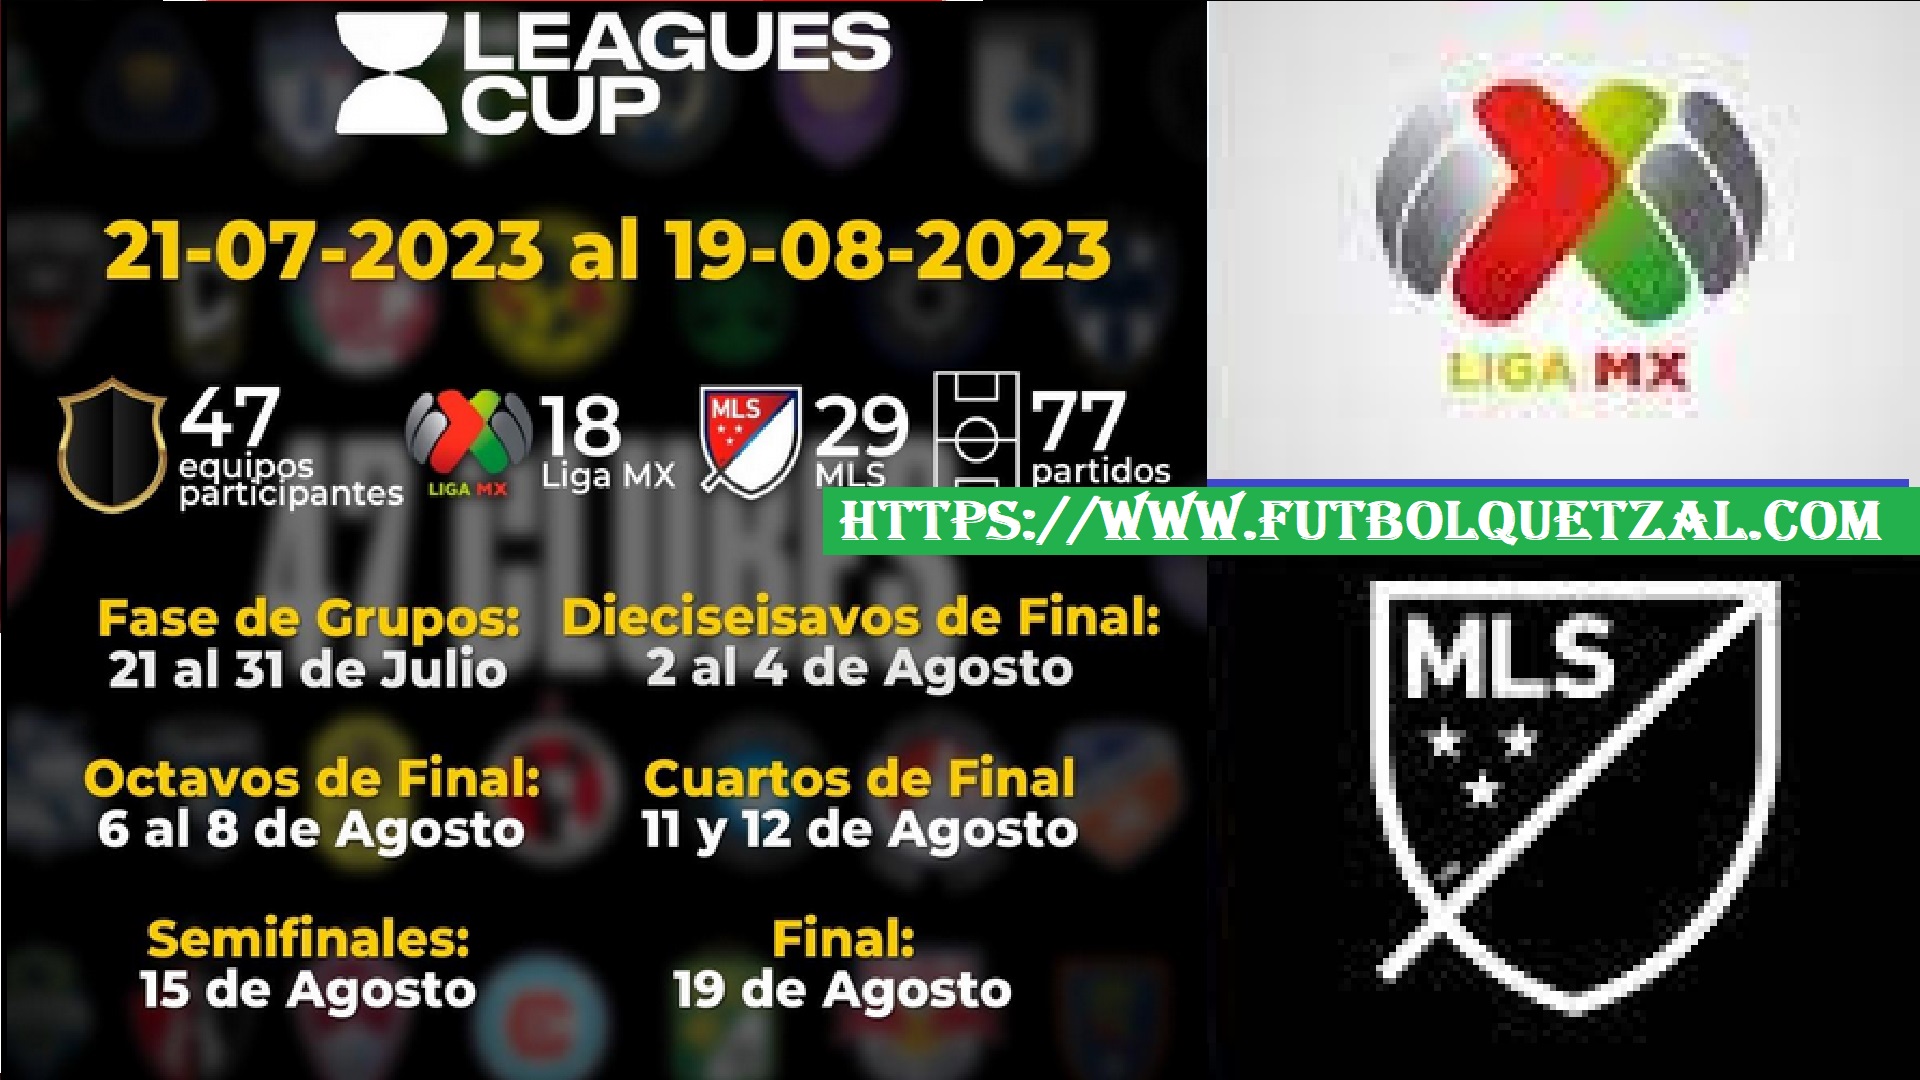 Calendario Completo Leagues Cup 2023